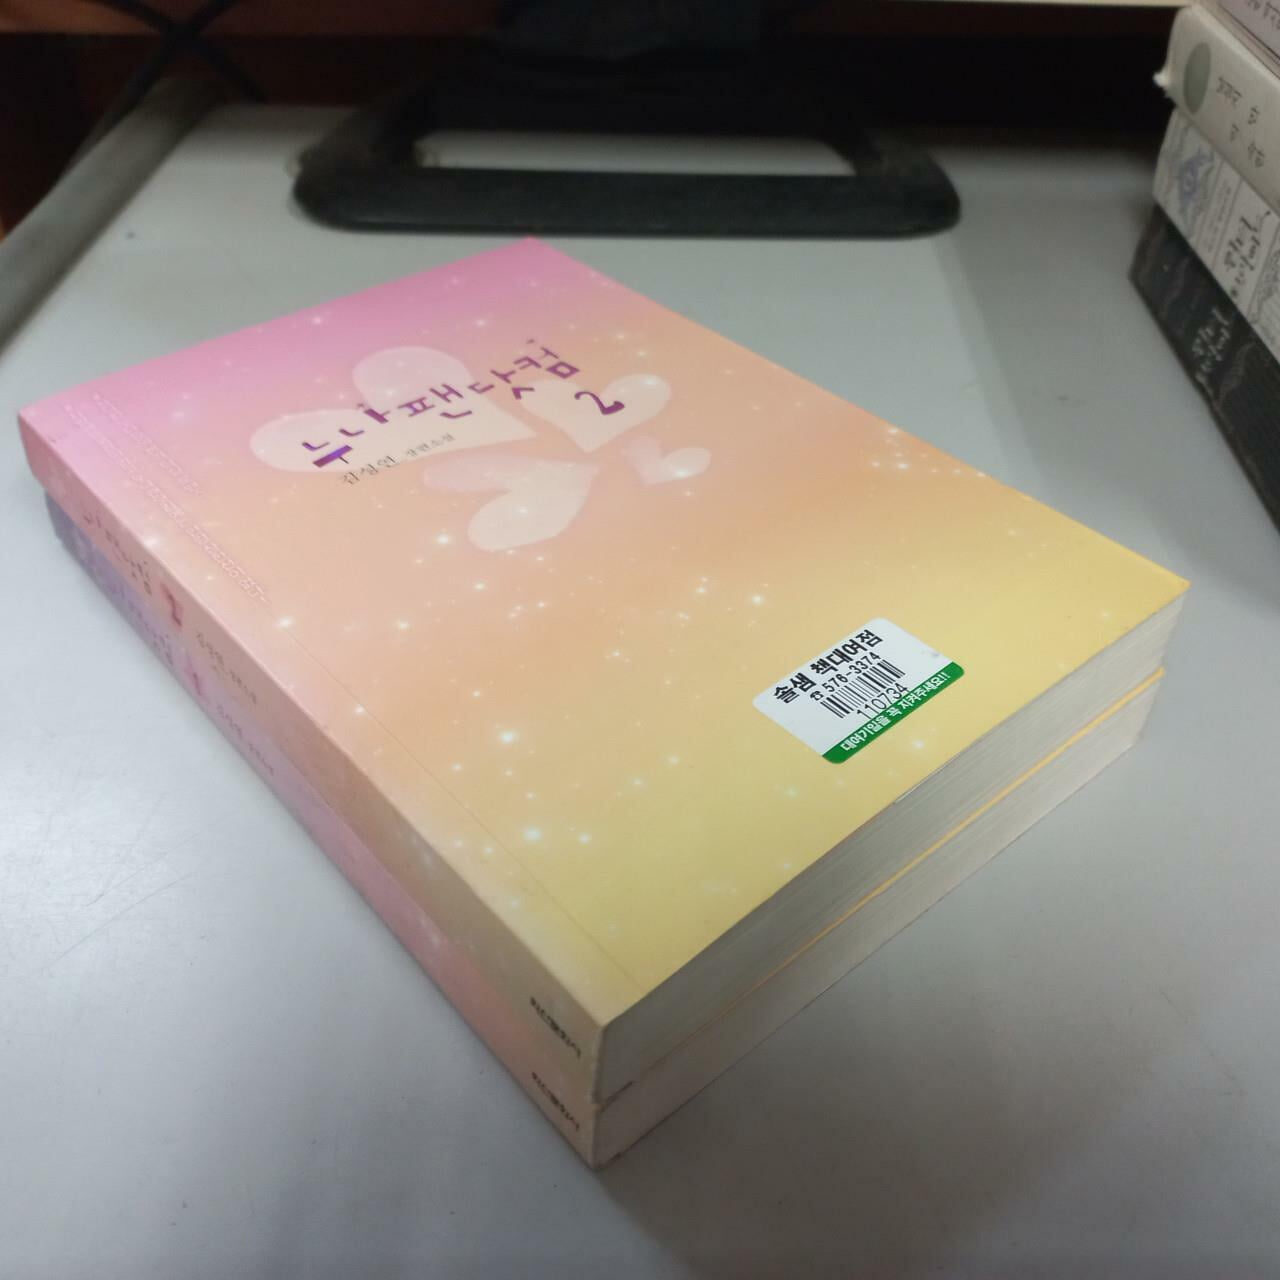 누나팬닷컴1-2완결 (중고특가 6000원/ 실사진 첨부) 코믹갤러리